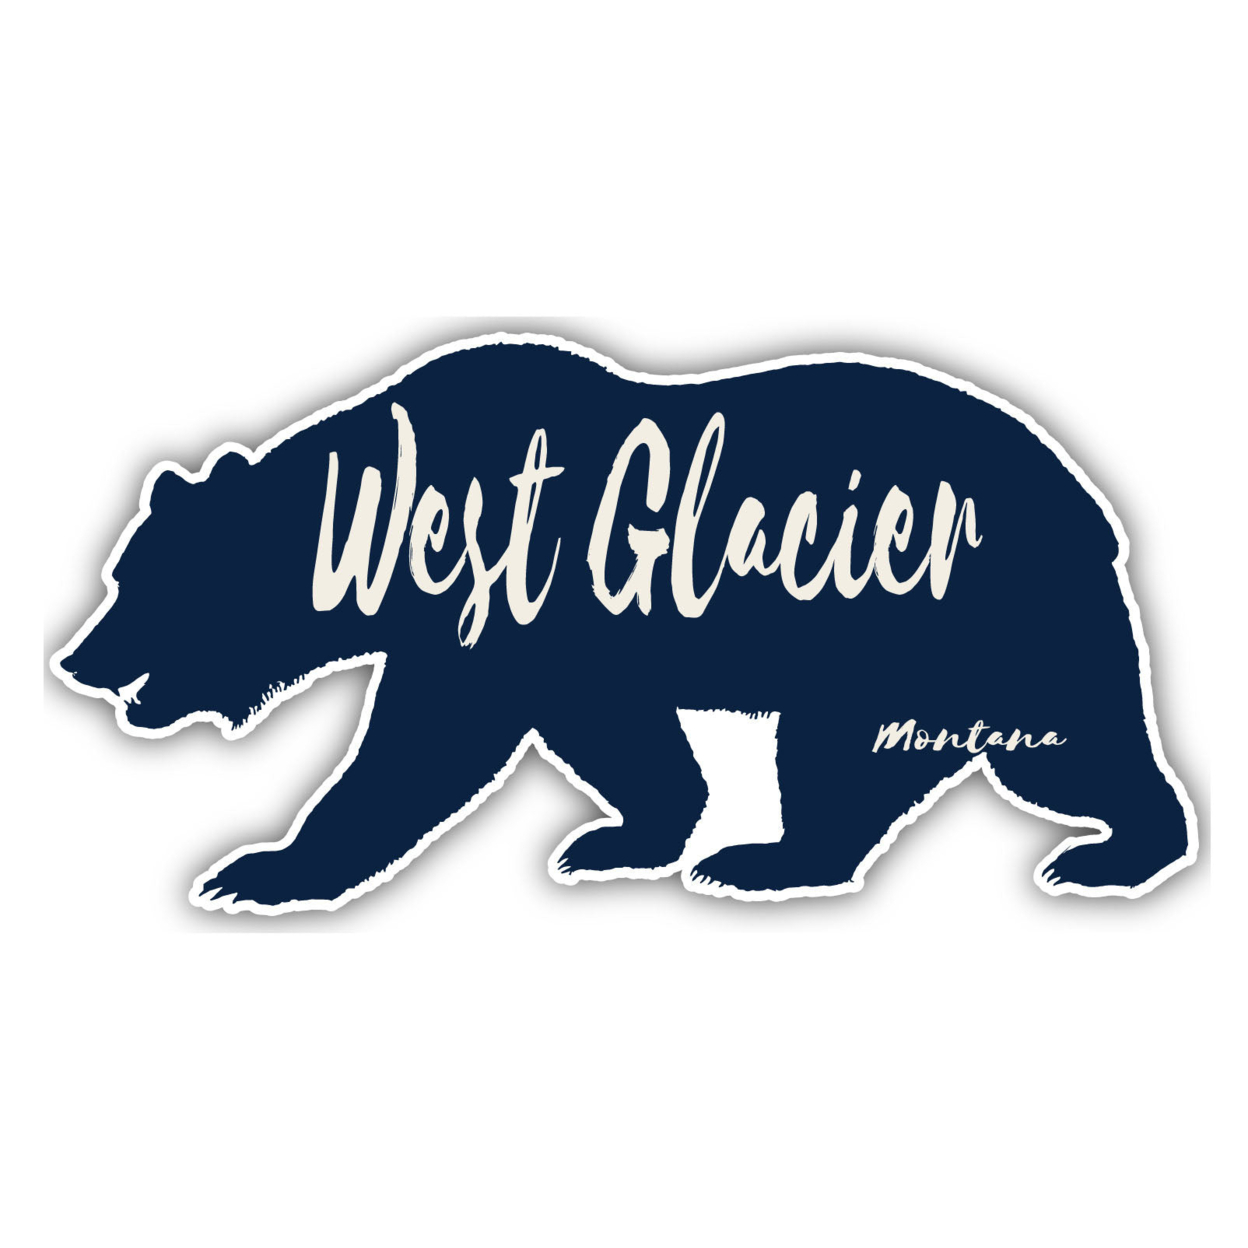 West Glacier Montana Souvenir Decorative Stickers (Choose Theme And Size) - Single Unit, 4-Inch, Bear